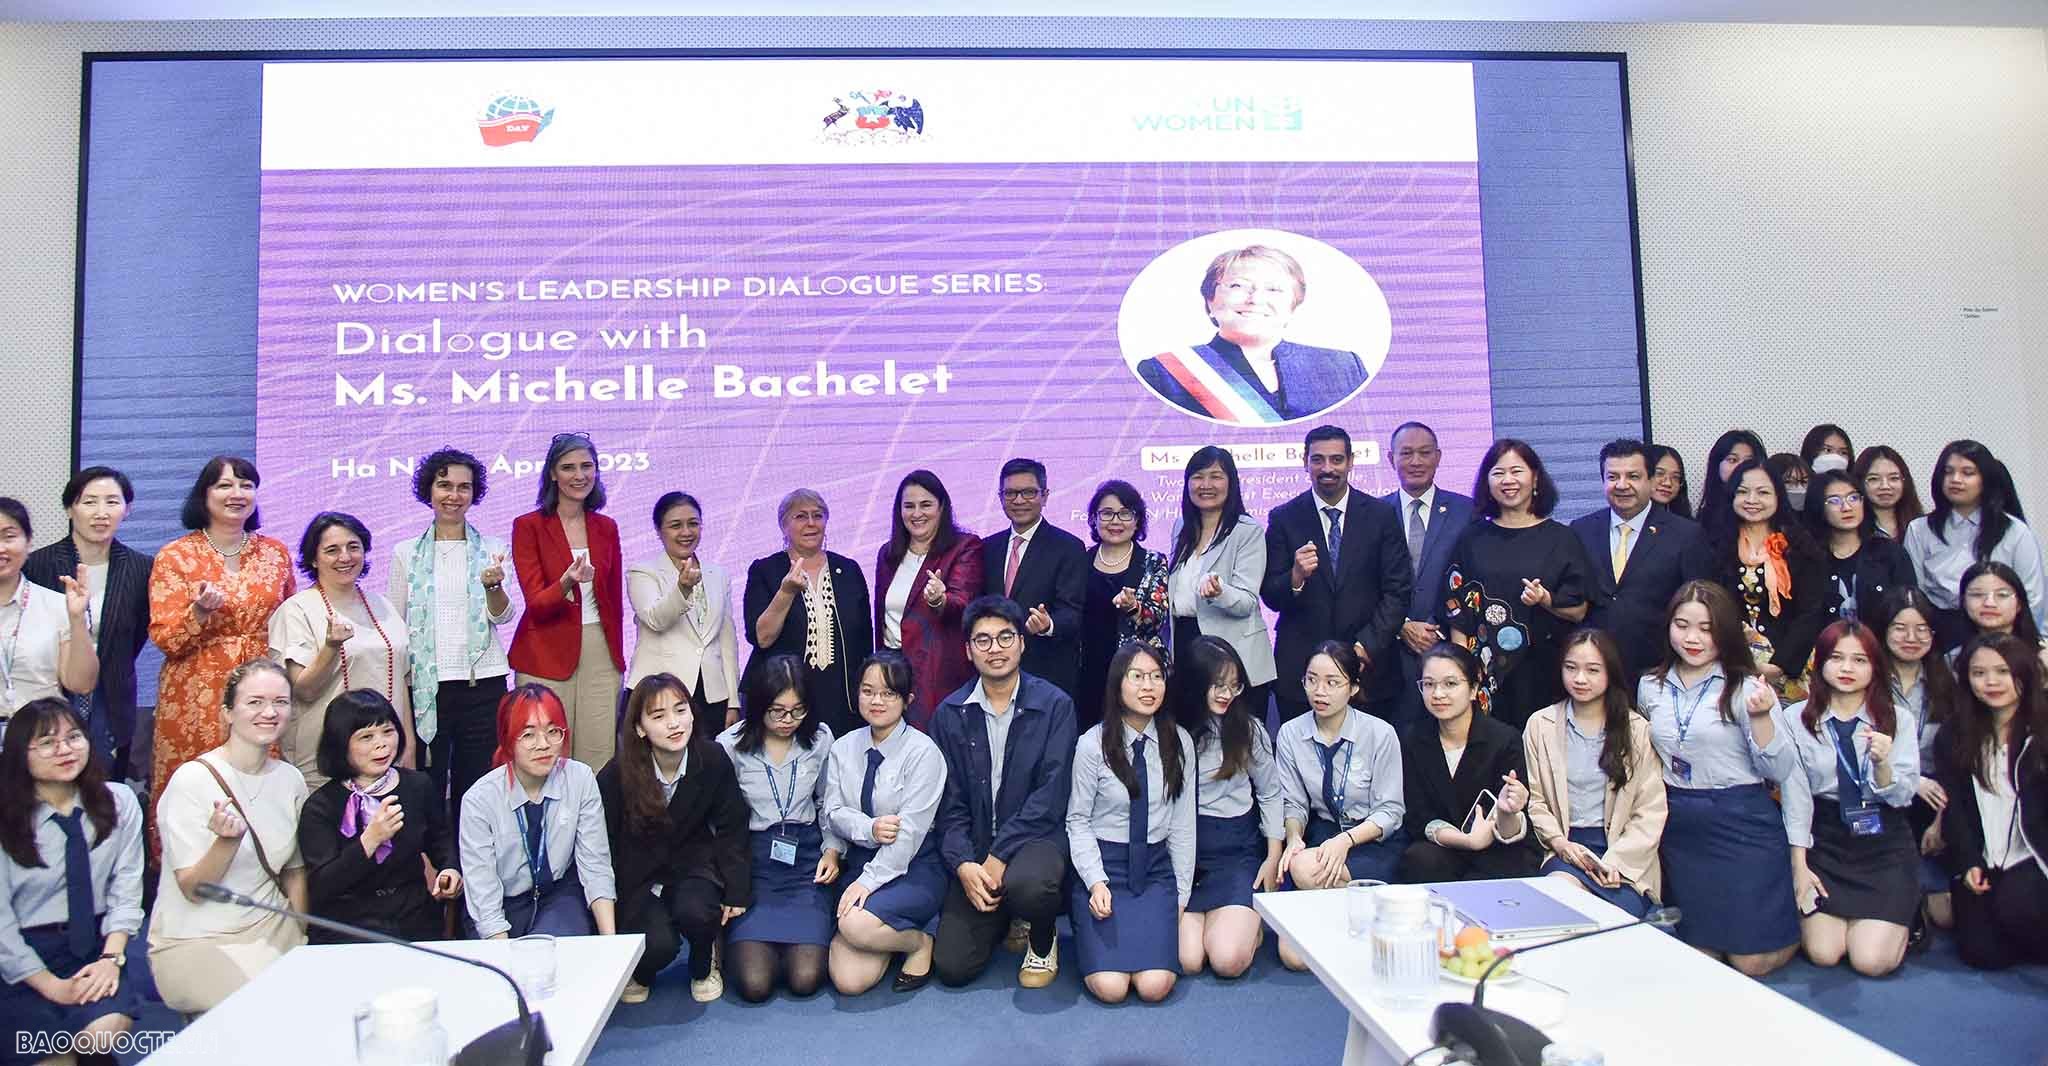 (04.03) Bà Michelle Bachelet chụp ảnh cùng các cán bộ ngoại giao nữ, Đại sứ, trưởng đại diện một số tổ chức quốc tế tại Việt Nam cùng sinh viên Học viện Ngoại giao tham dự buổi nói chuyện. (Ảnh: Nguyễn Hồng)